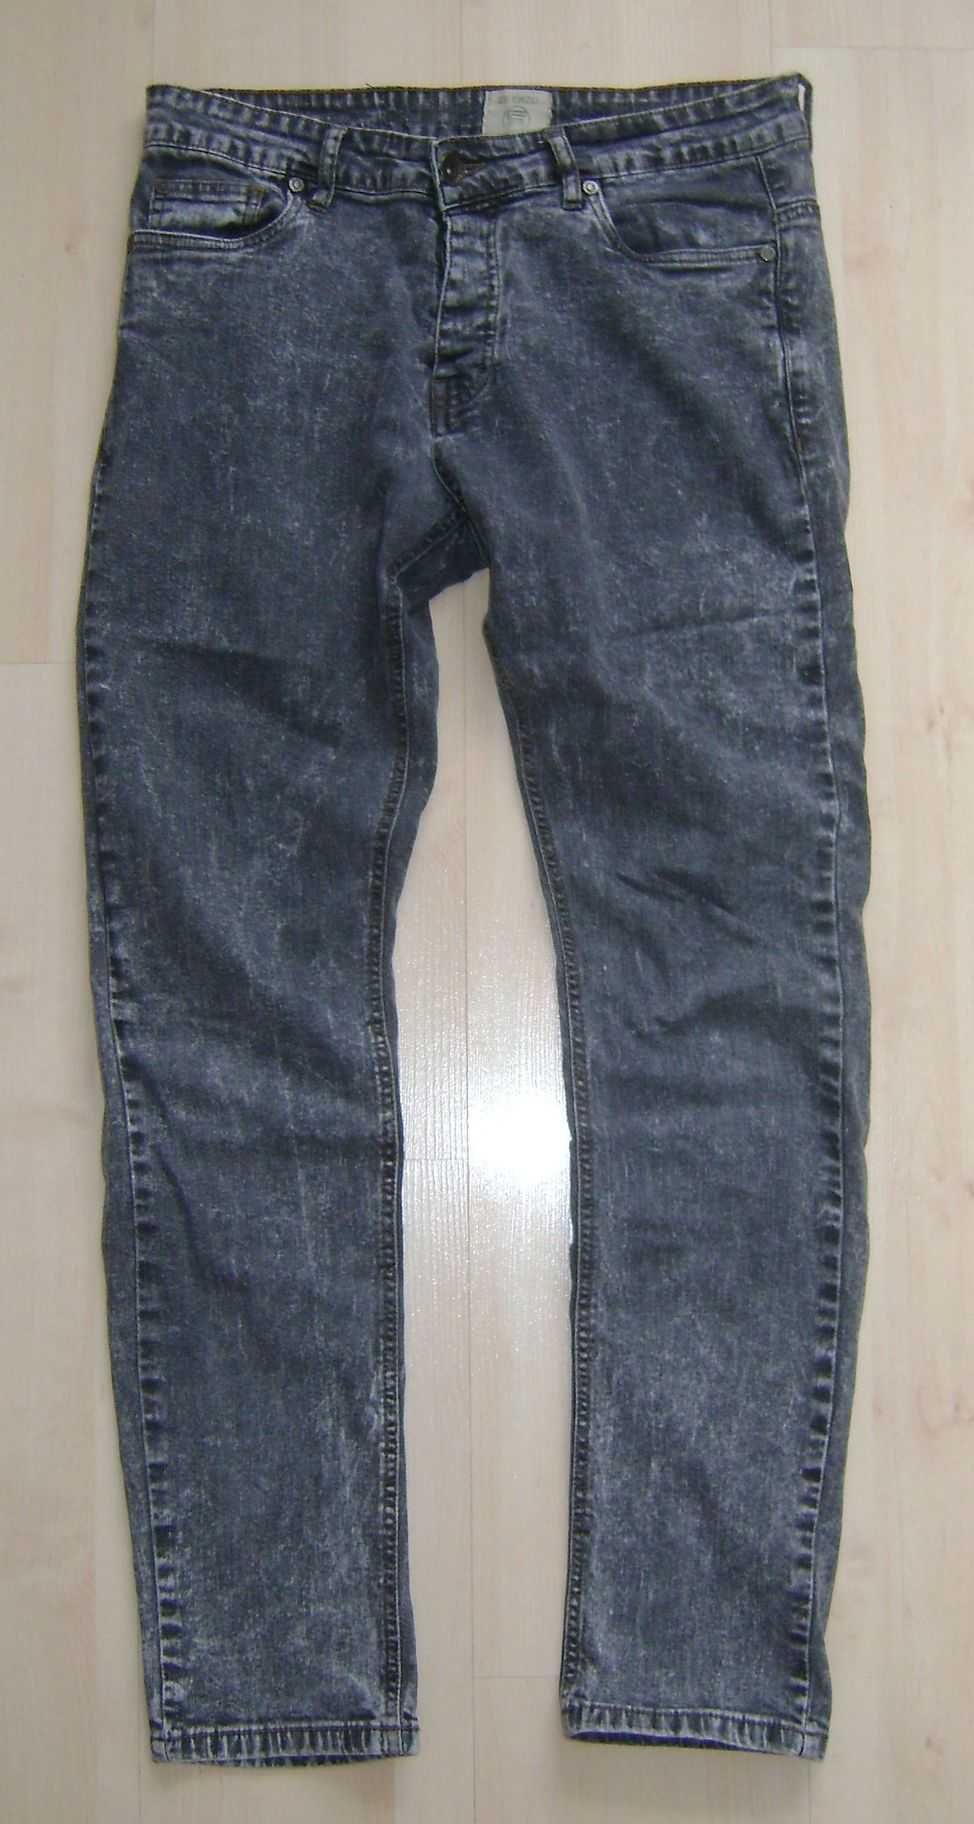 Spodnie jeans dżinsowe h&m męskie roz M